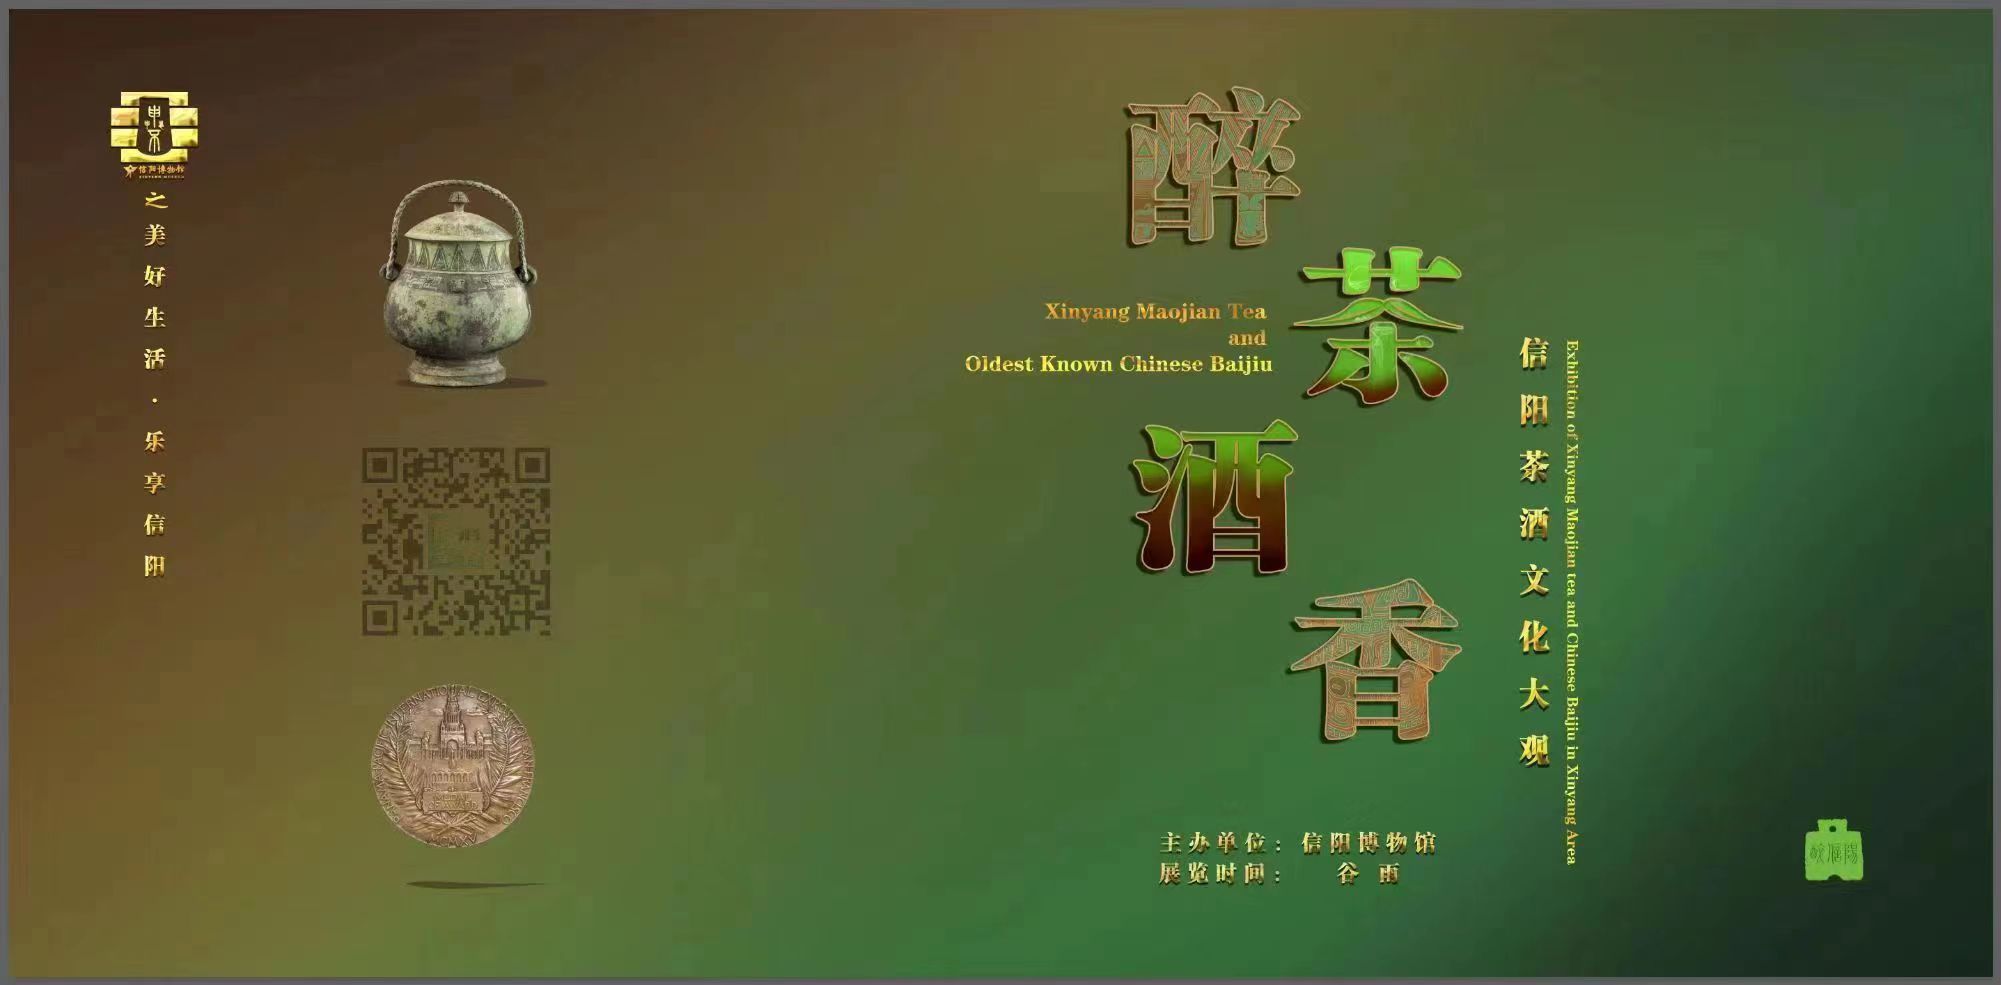 信阳博物馆隆重推出《醉酒茶香——信阳茶酒文化大观》线上展览